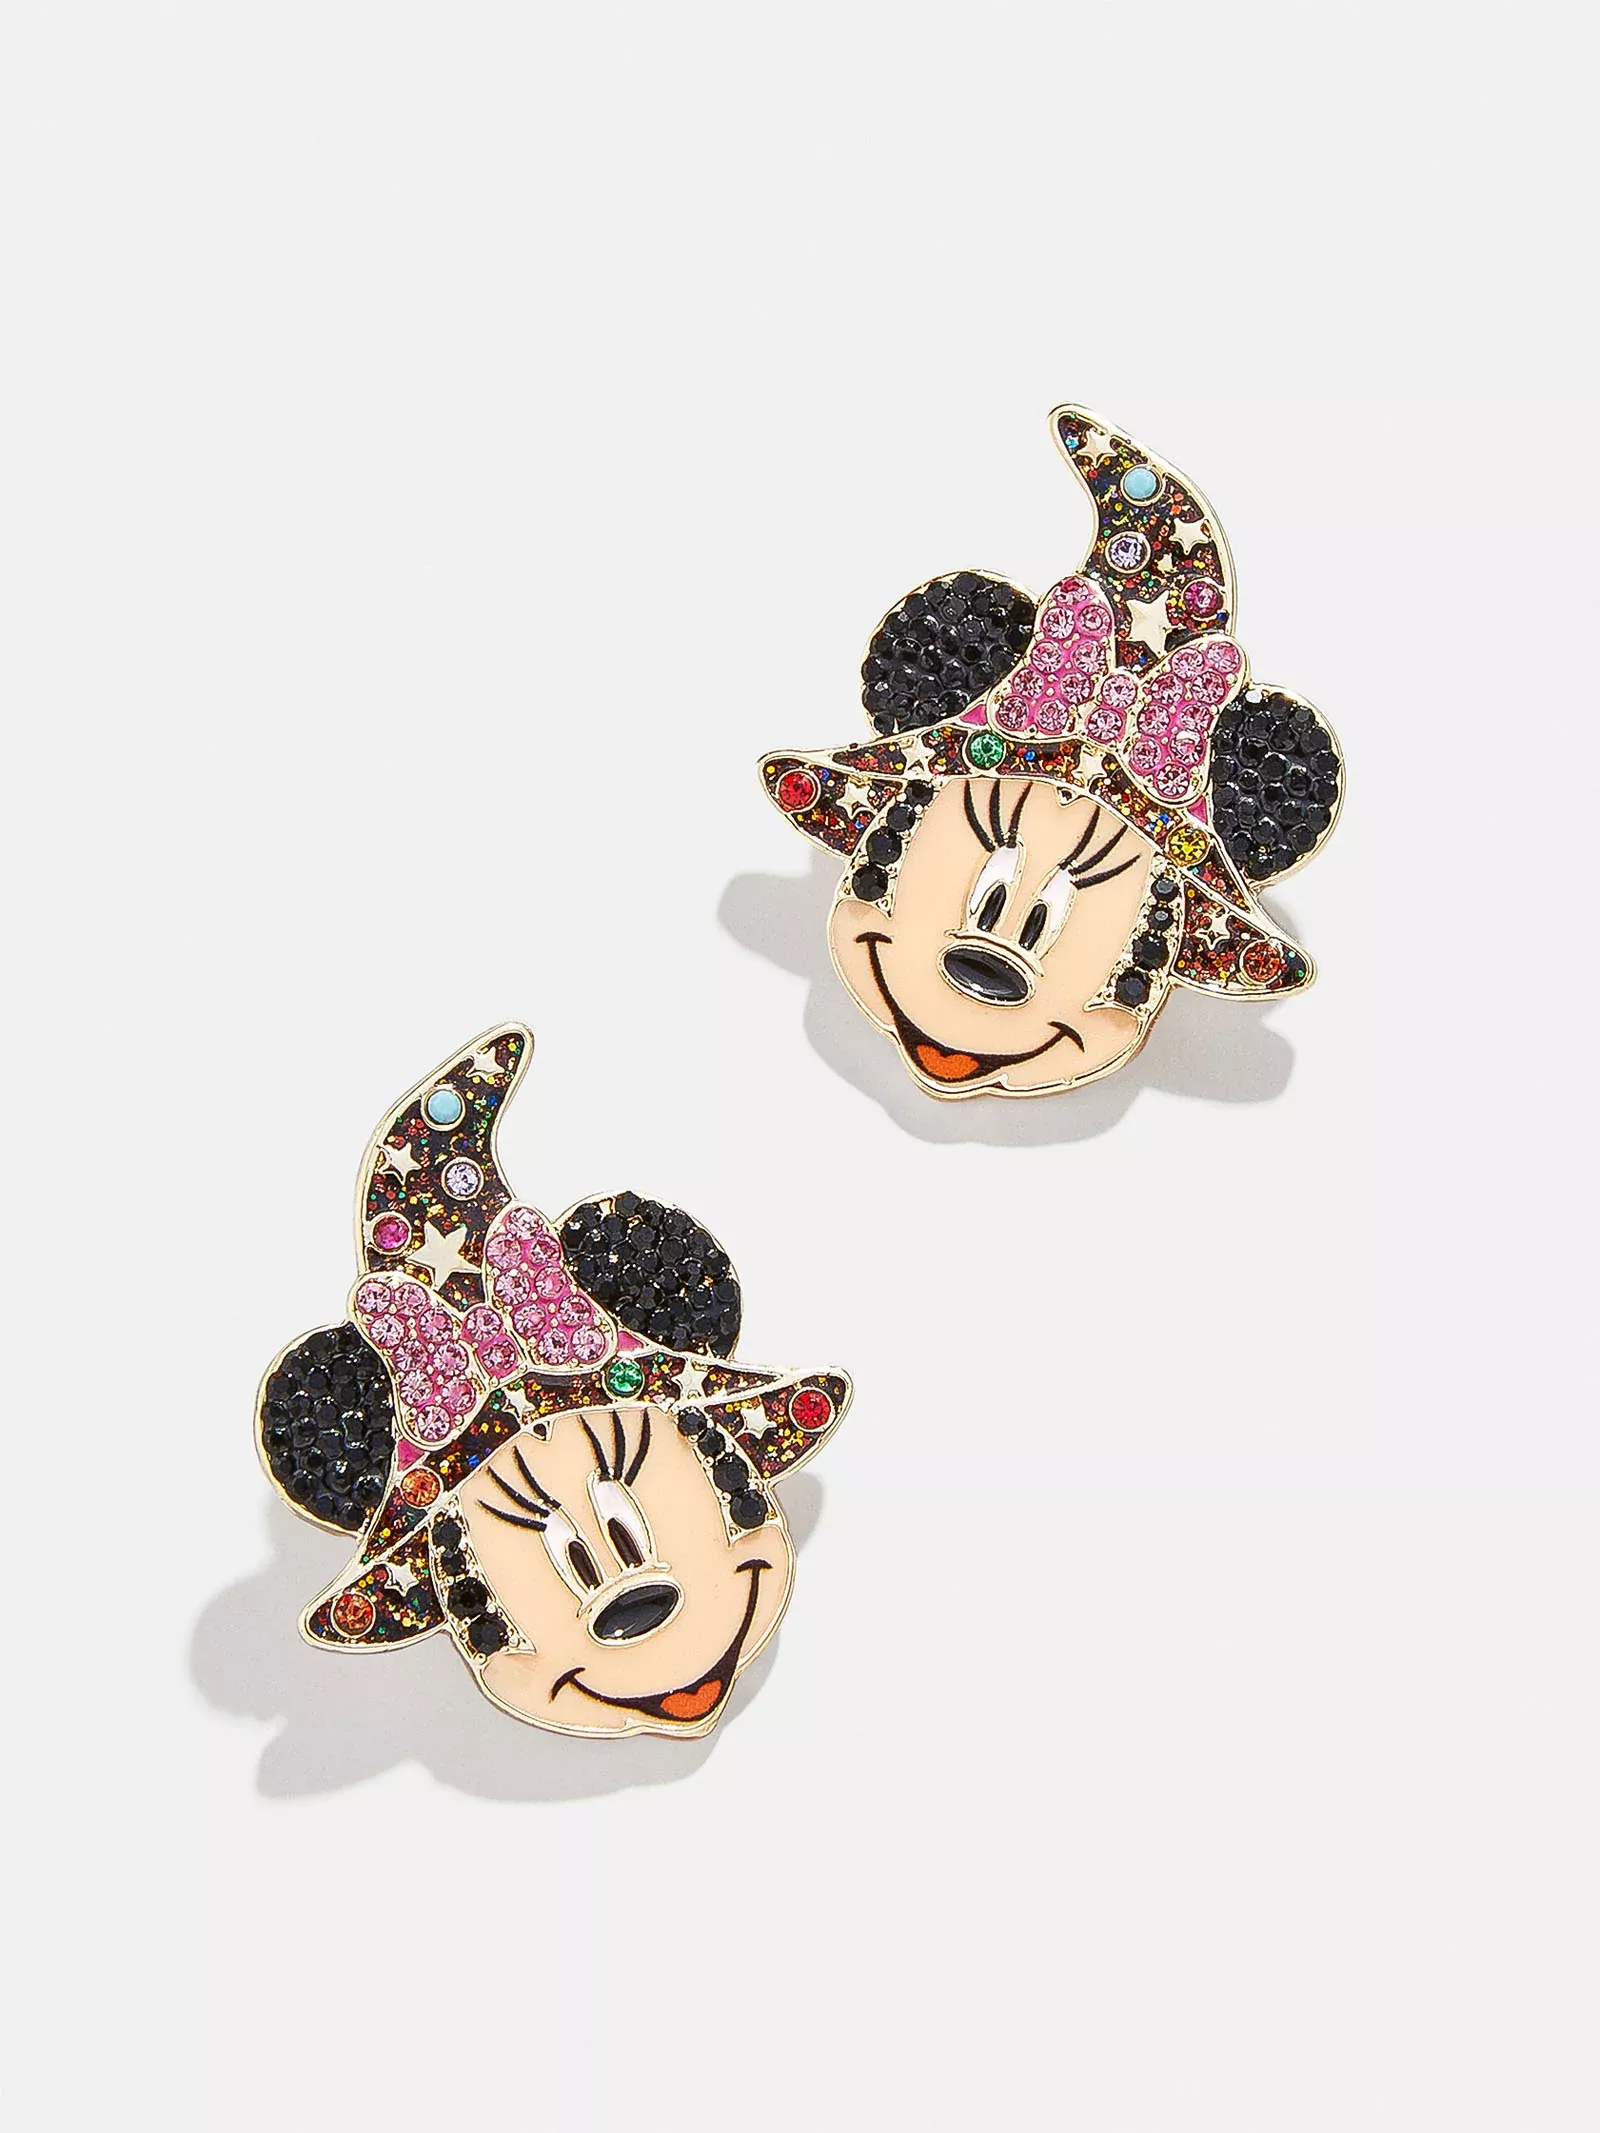 🎅🎄 Disney x Baublebar Mickey Nutcracker earrings @tjmaxx 🎄🎅 #tjmaxx  #tjmaxxfinds #tjmaxxdisney #maxxlife #disneytjmaxxfinds…